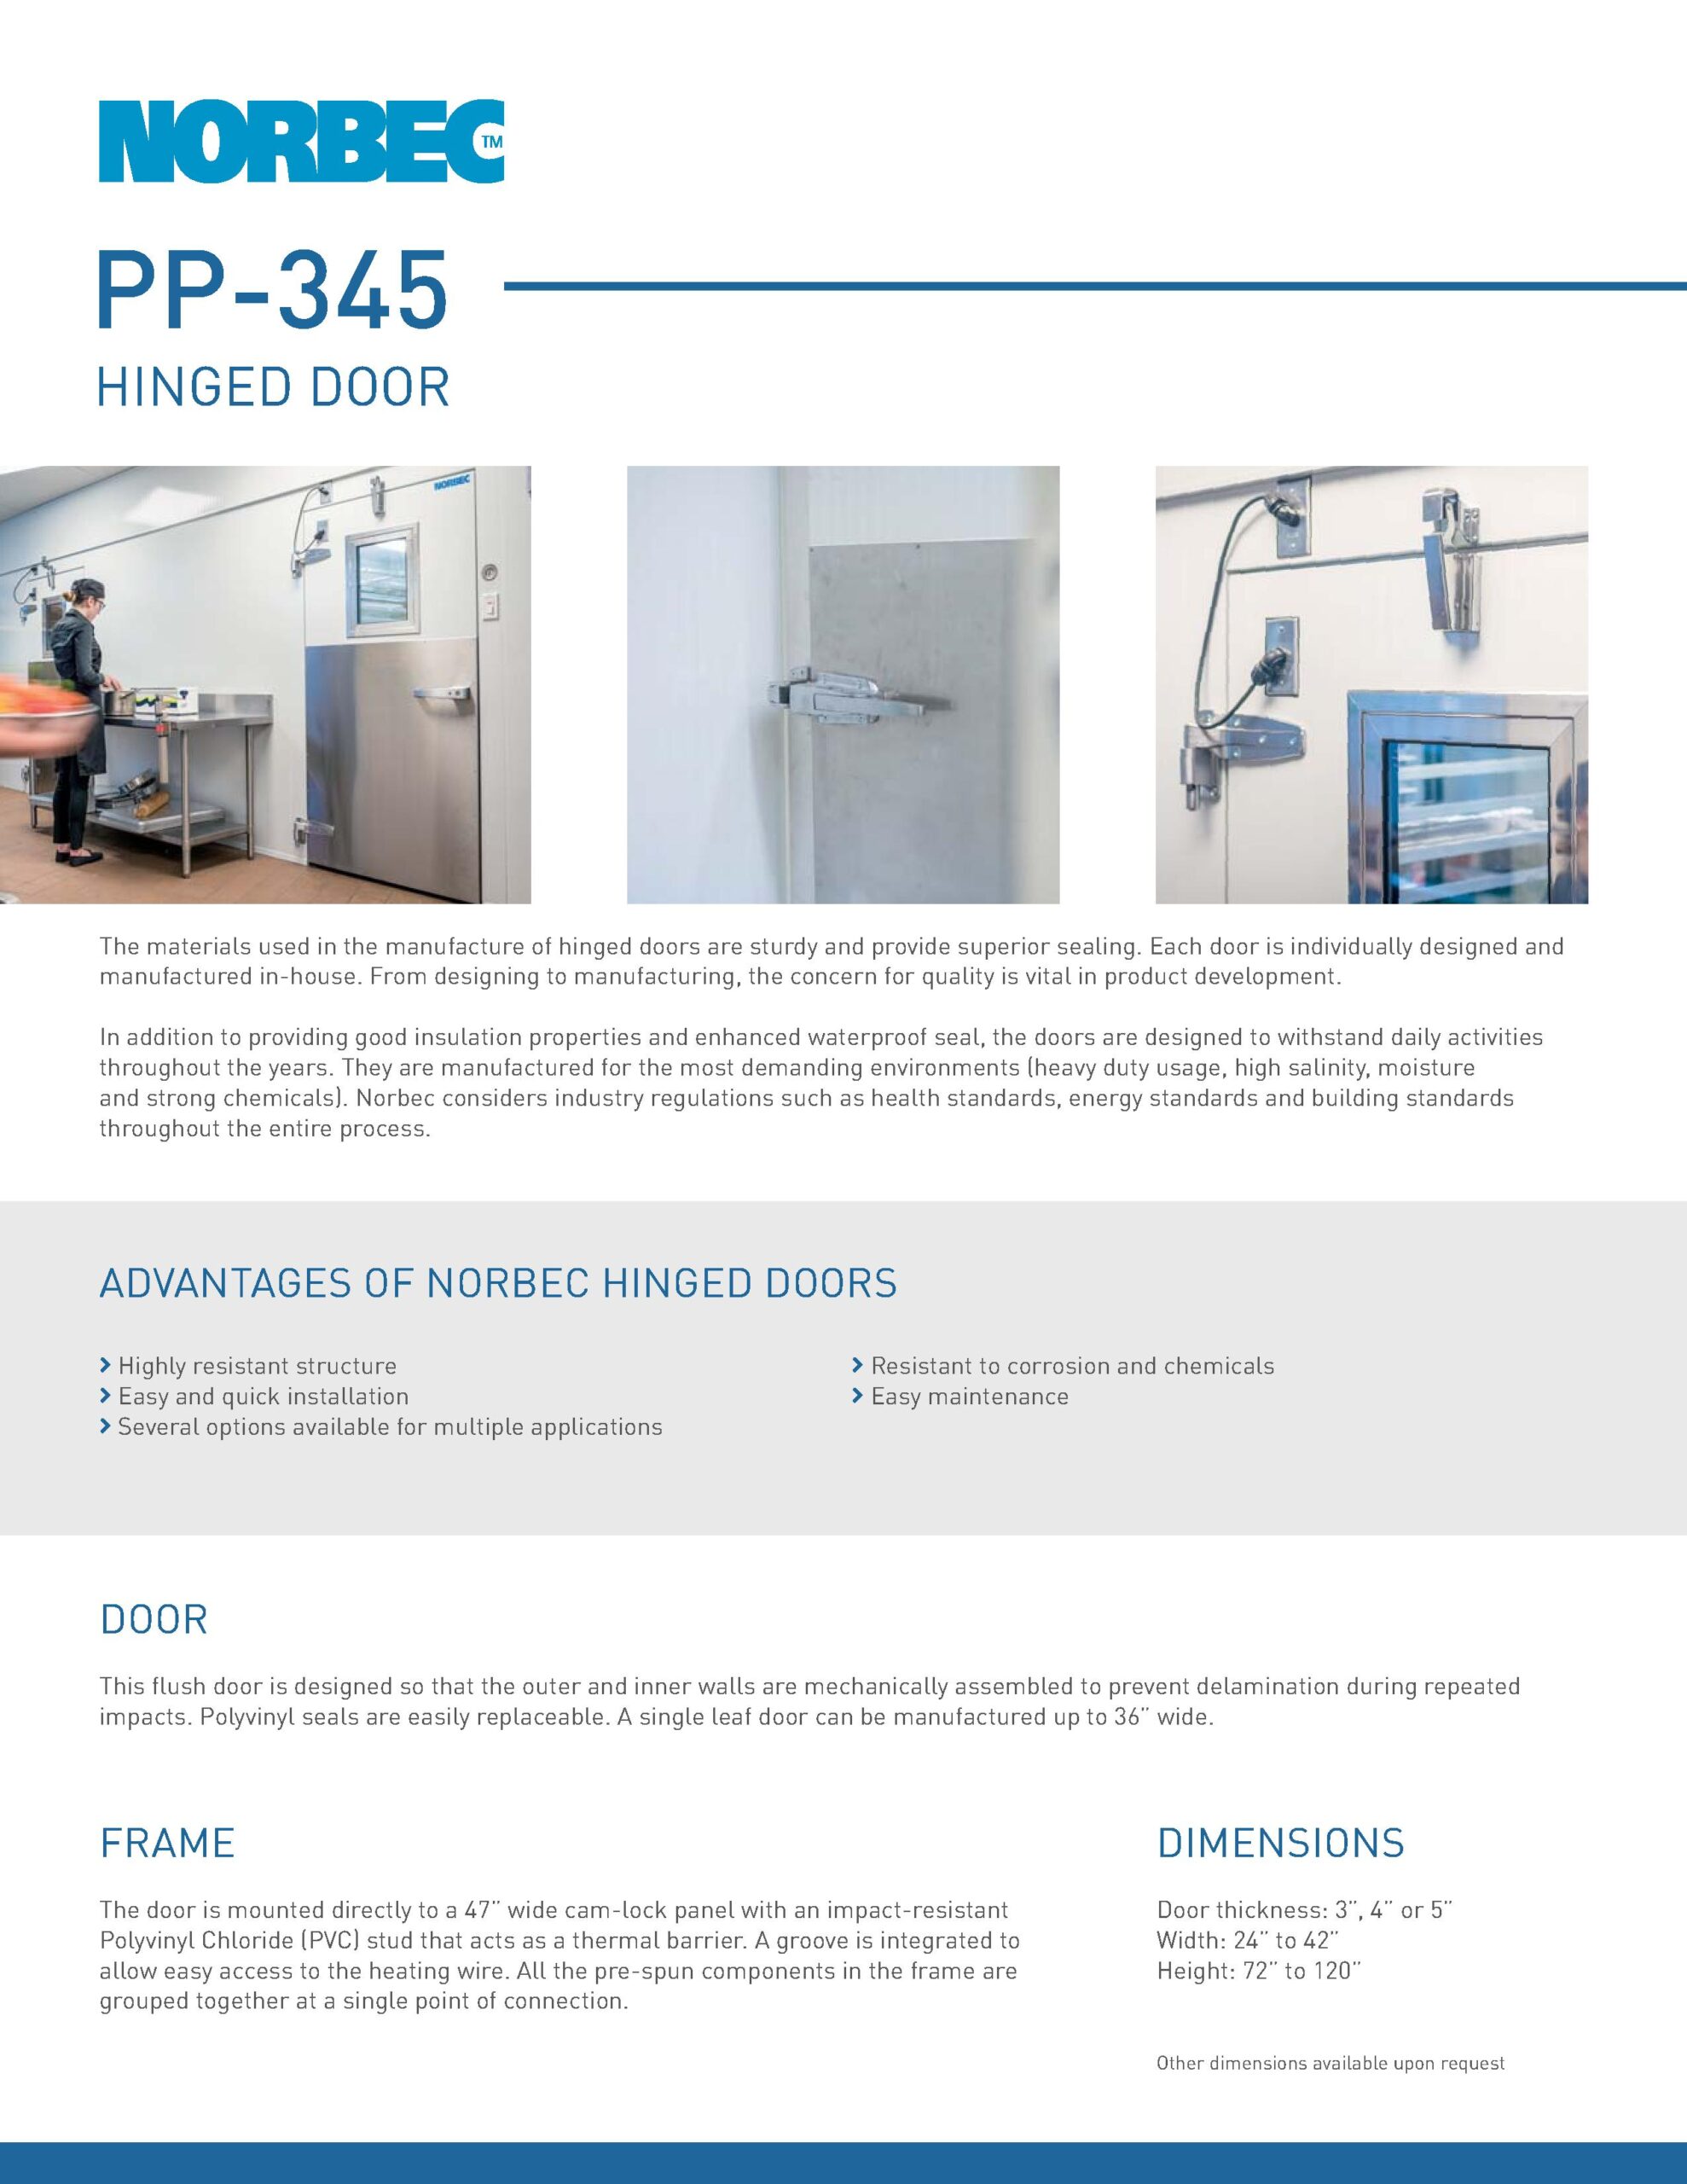 Preview Technical sheet door PP-345